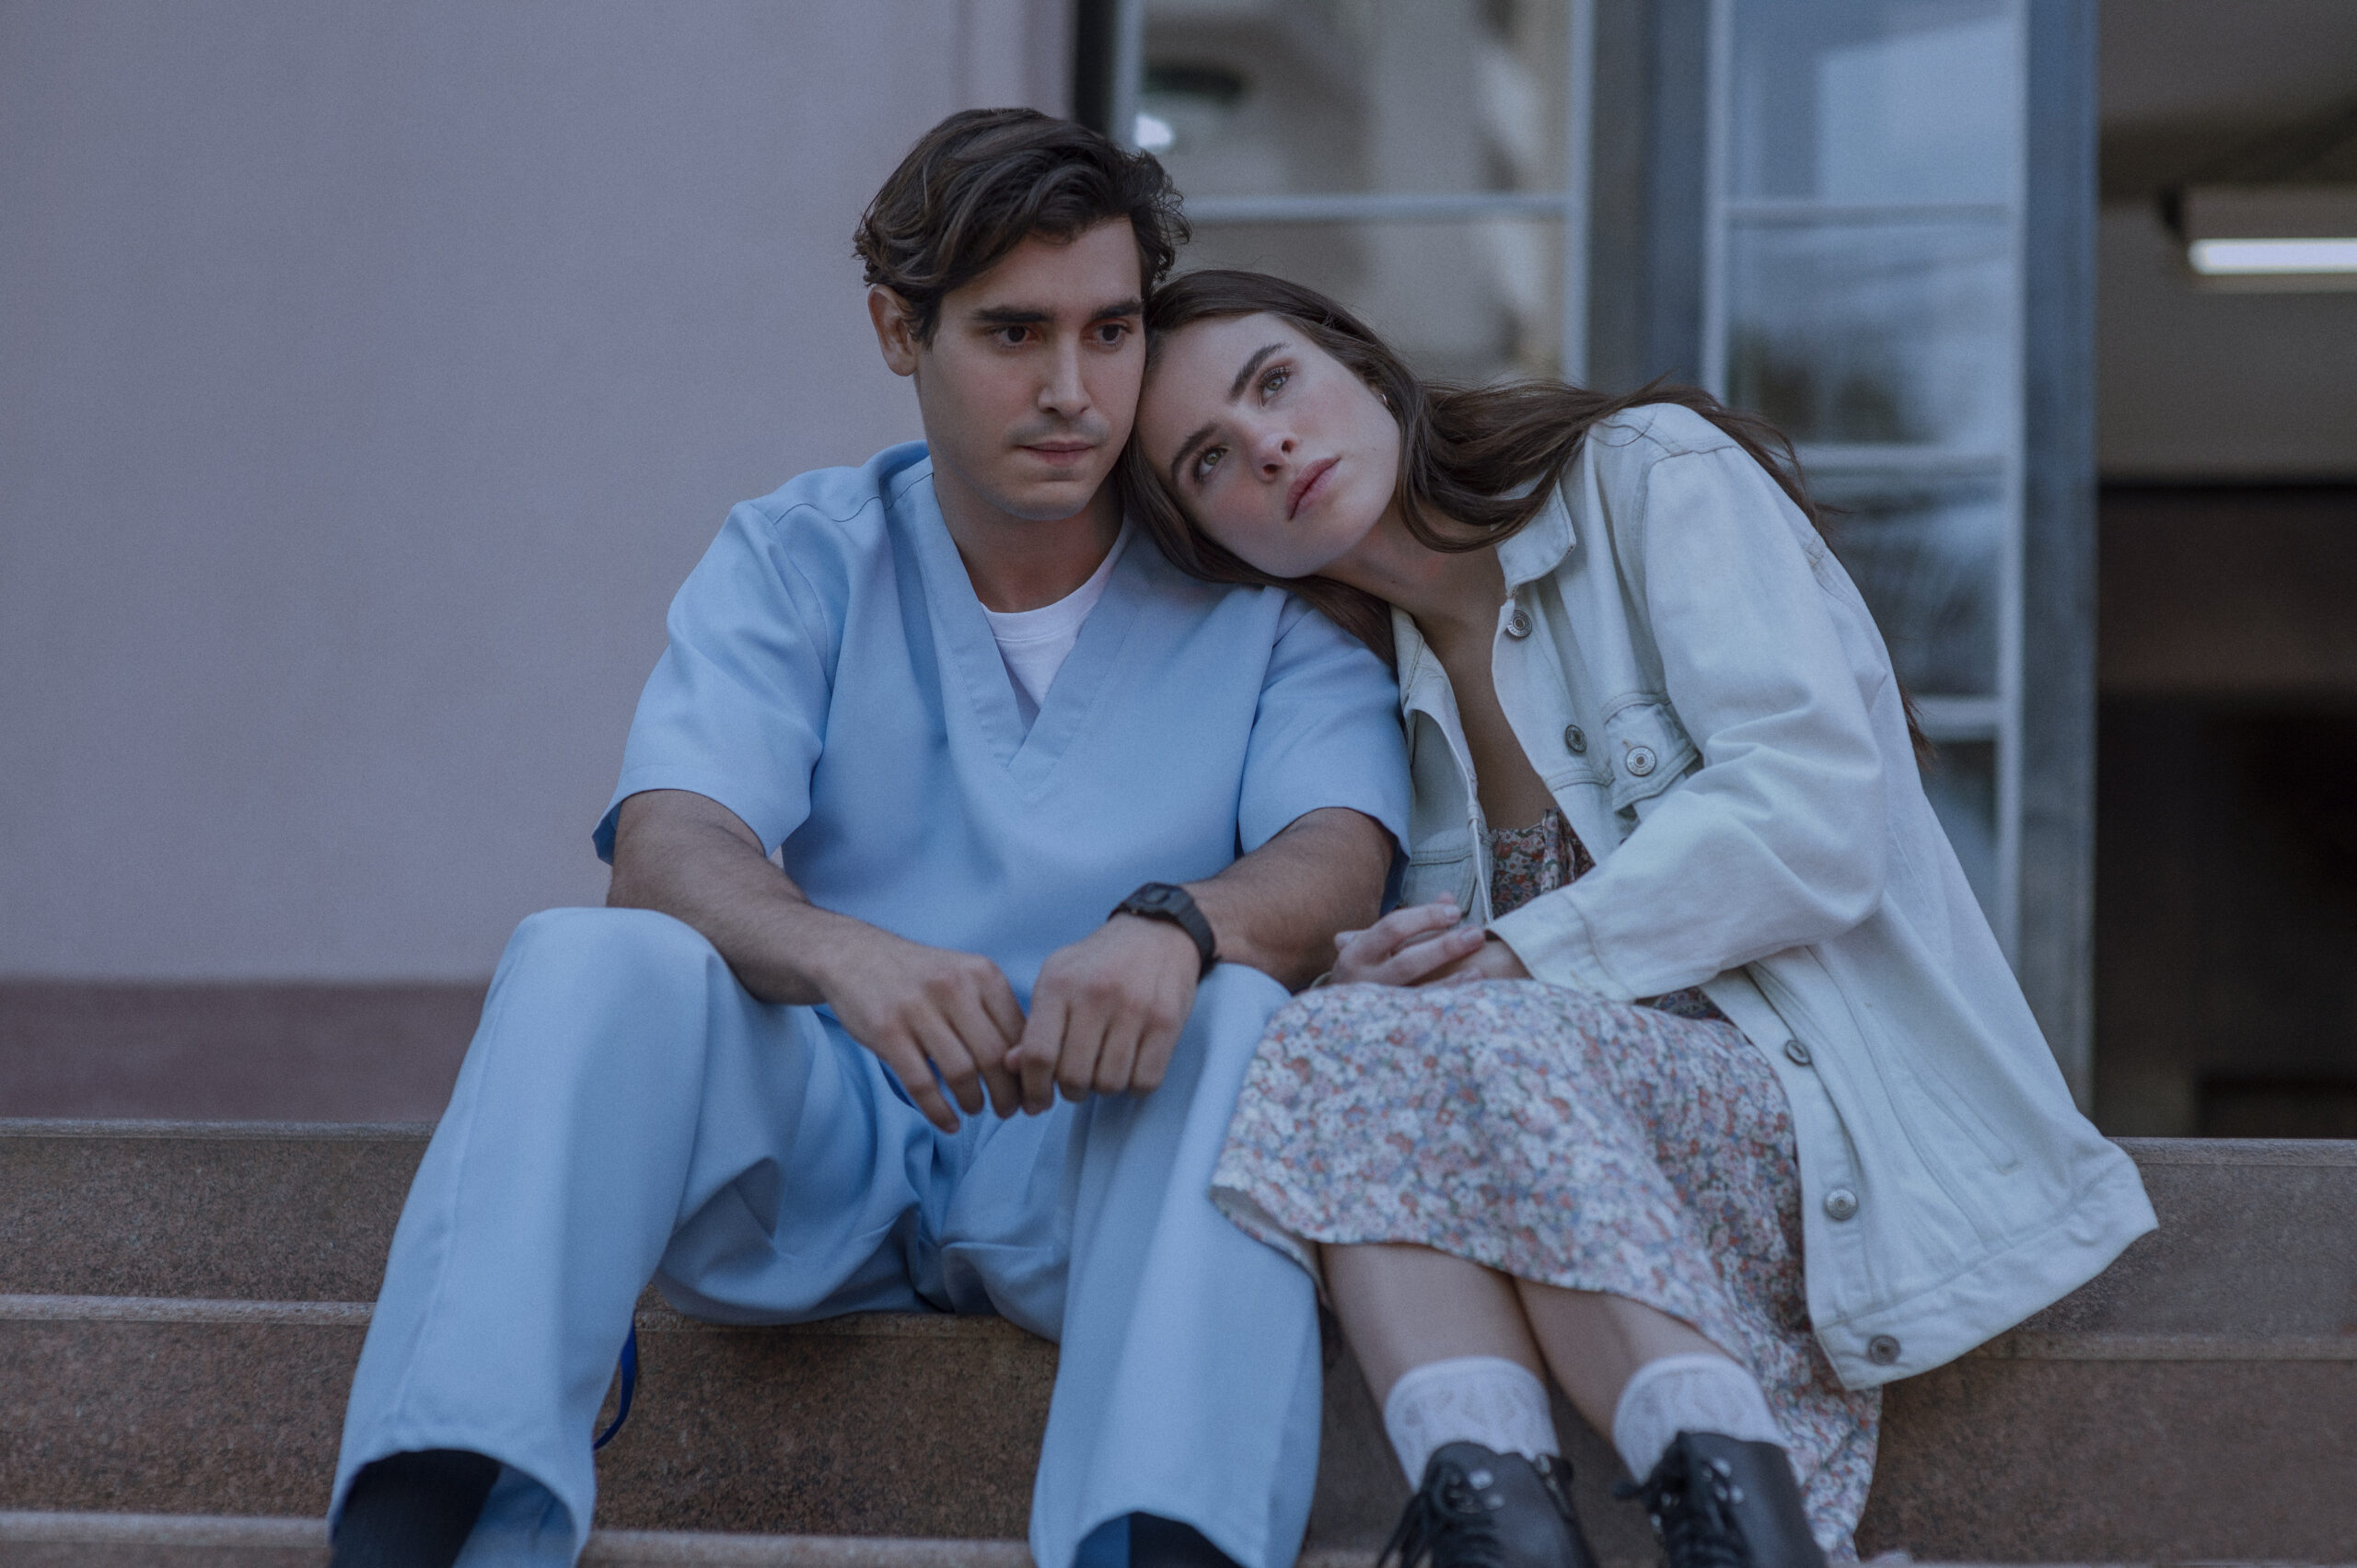 Romance que inspirou filme da Netflix estreia na Lista dos Livros